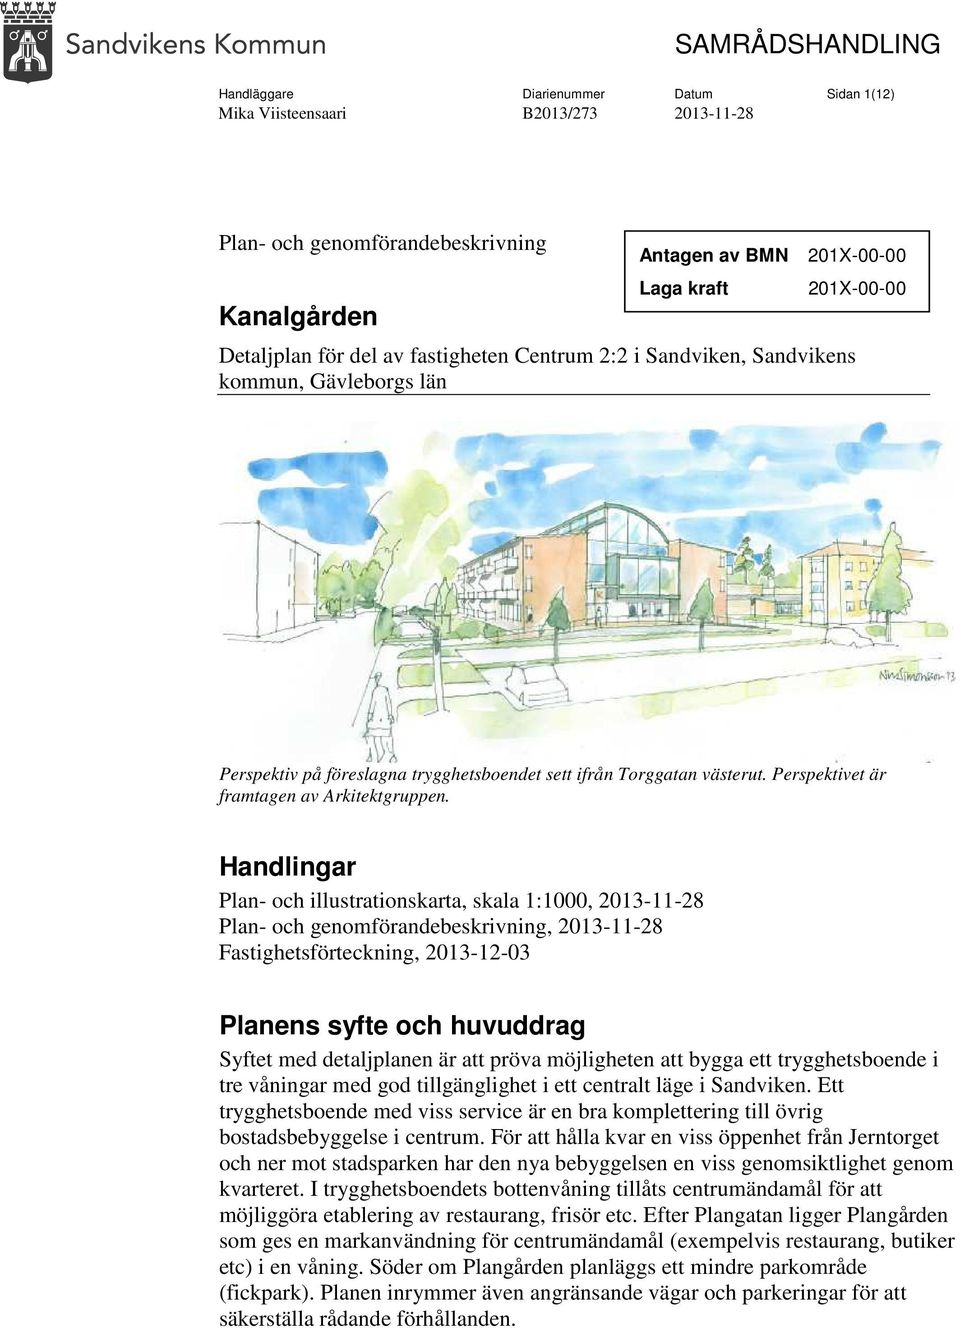 Handlingar Plan- och illustrationskarta, skala 1:1000, Plan- och genomförandebeskrivning, Fastighetsförteckning, 2013-12-03 Planens syfte och huvuddrag Syftet med detaljplanen är att pröva